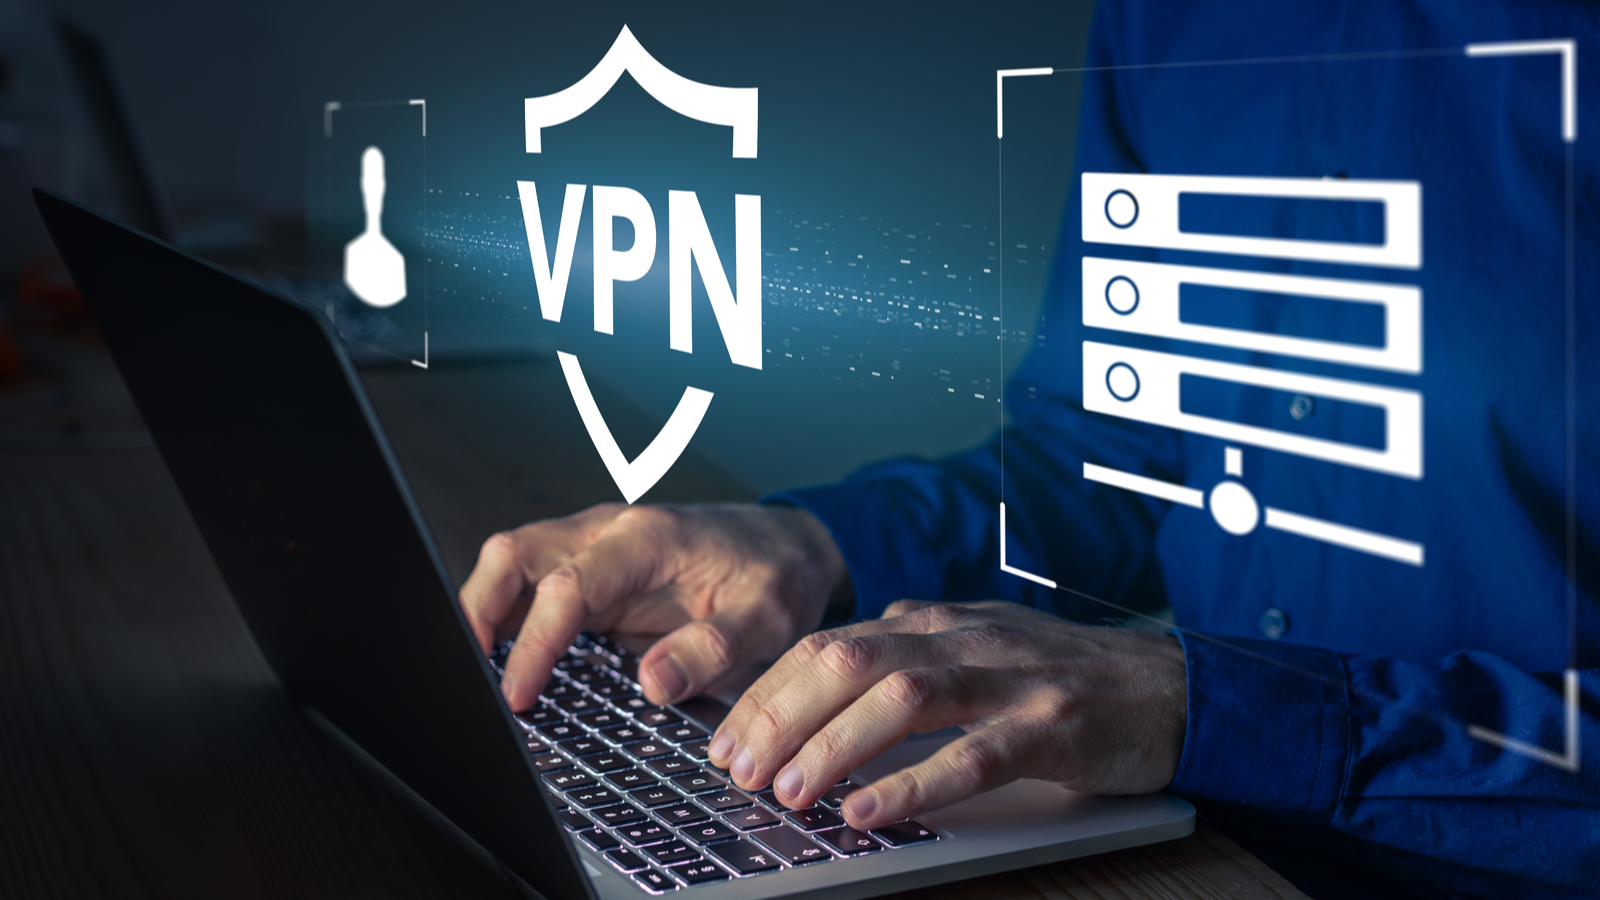 L'usage du VPN a presque doublé en France l'année dernière